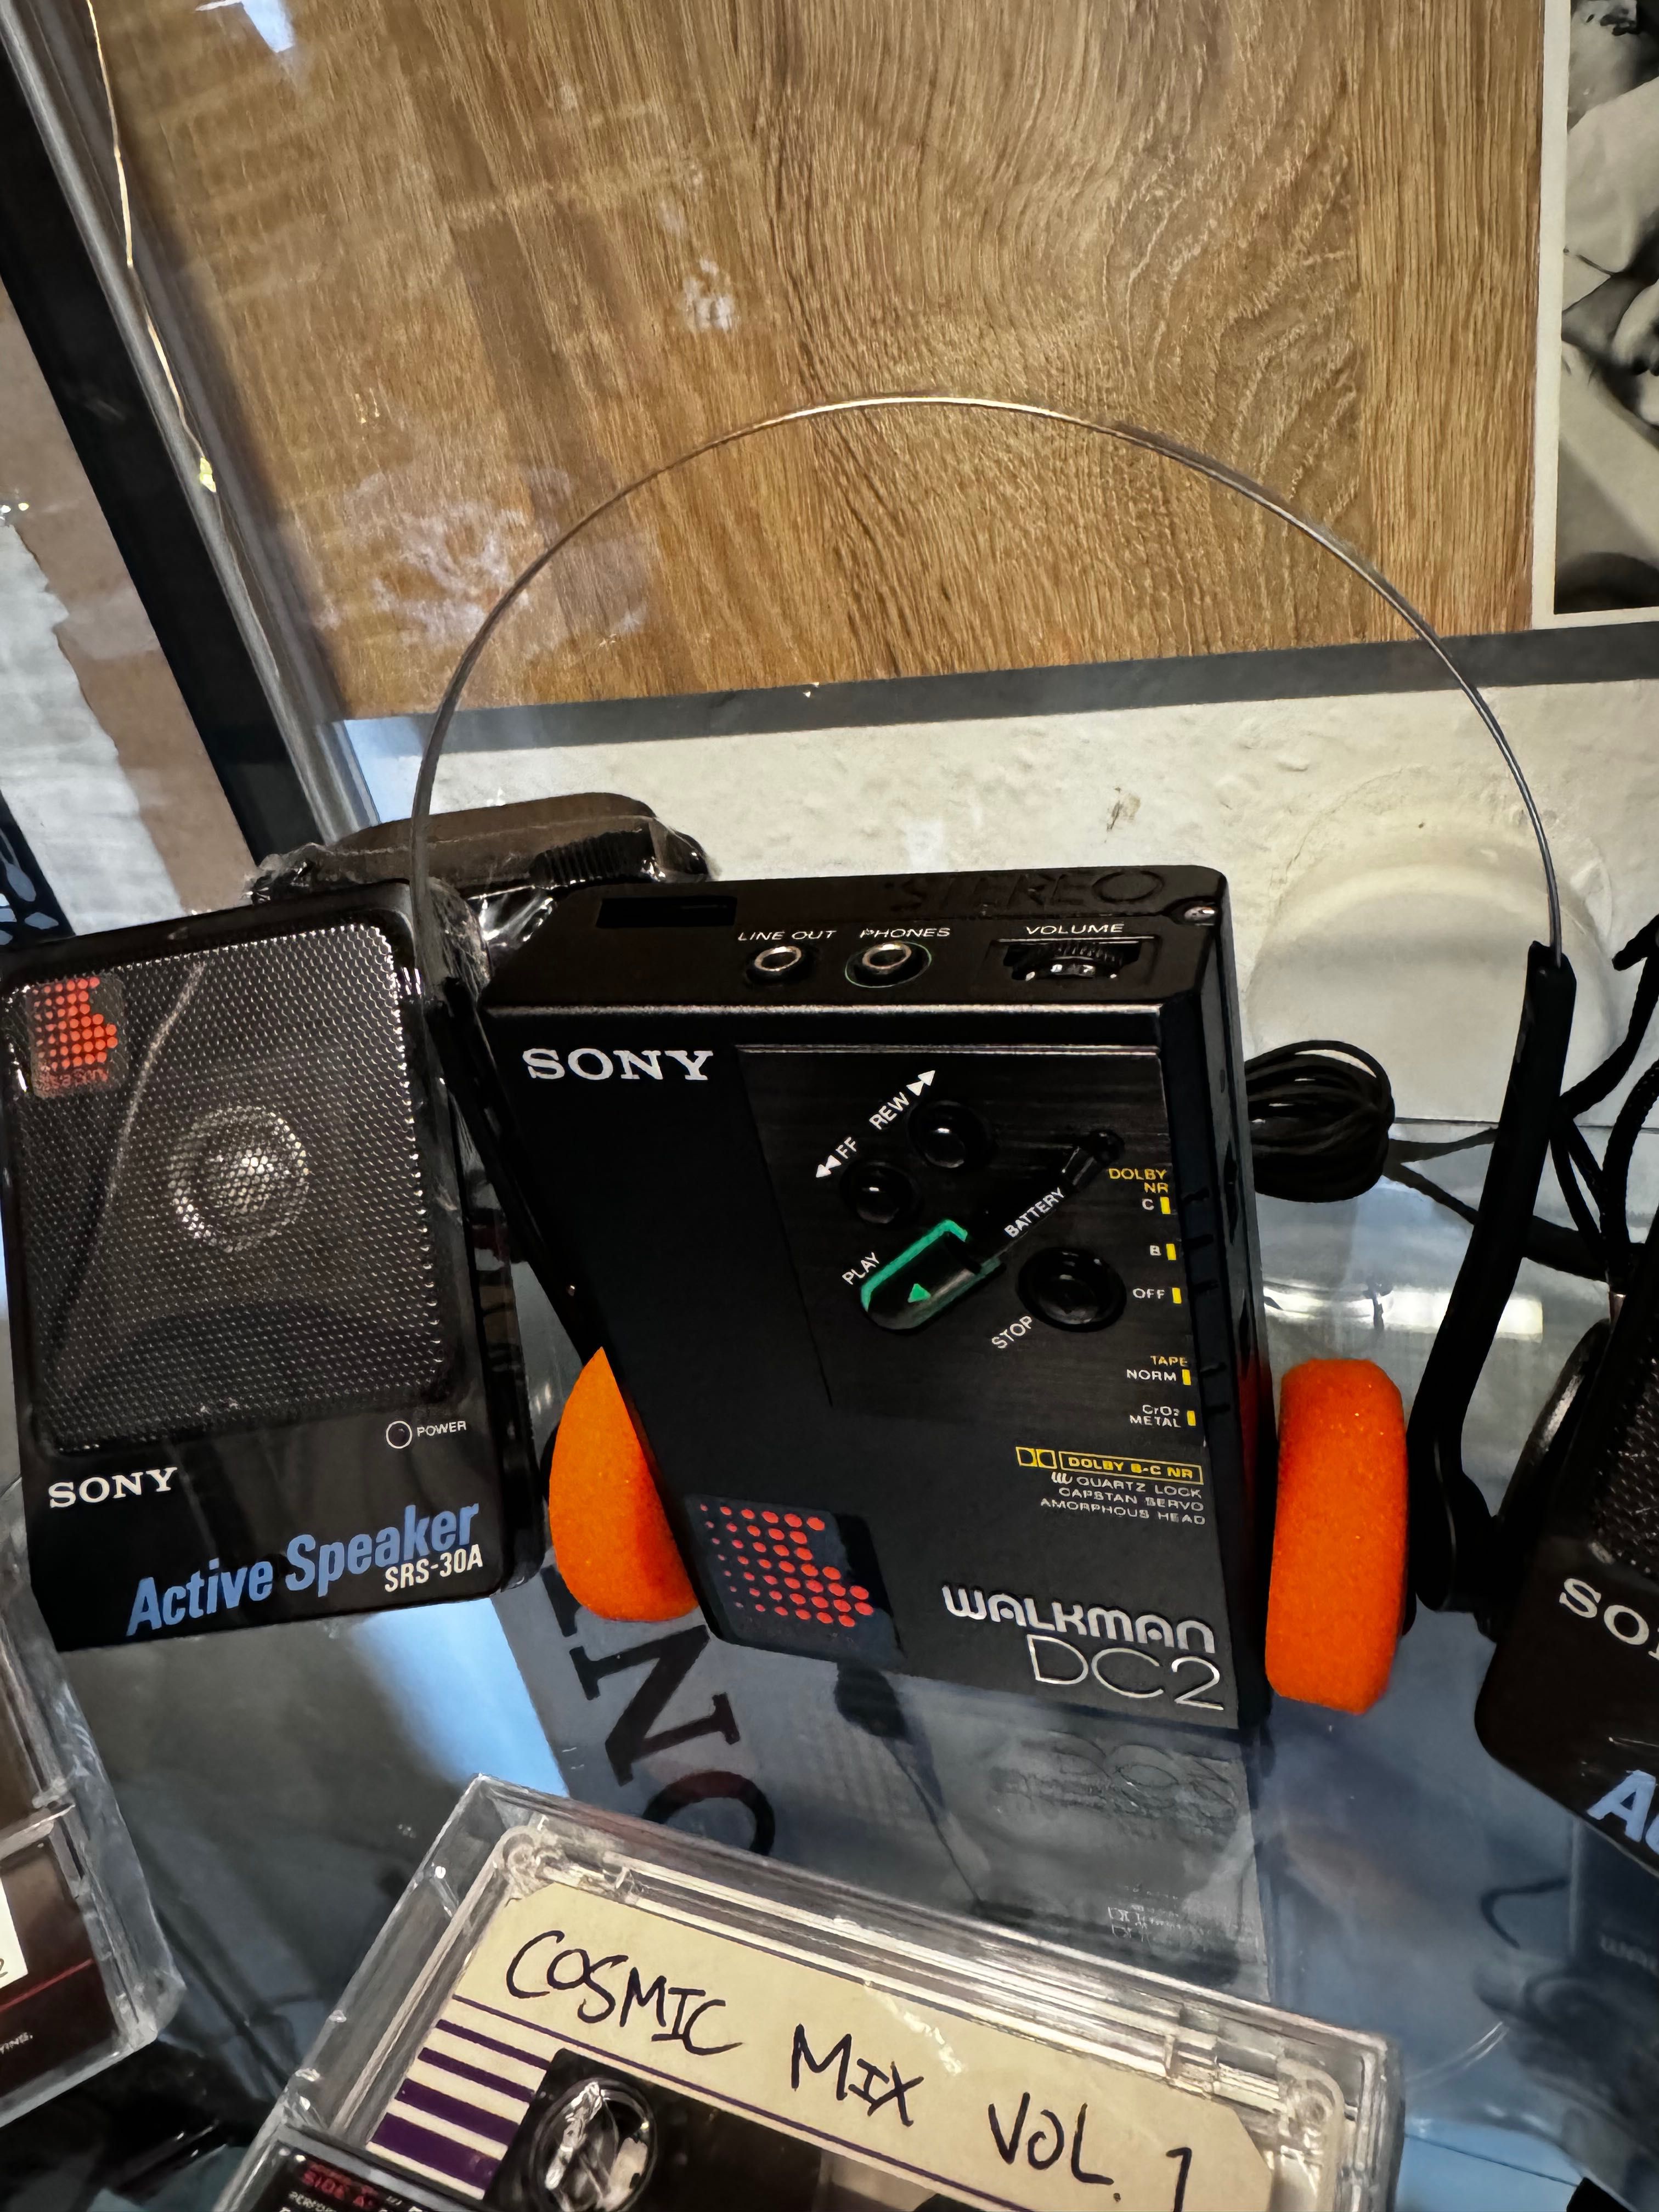 Sony Walkman DC2 Negru